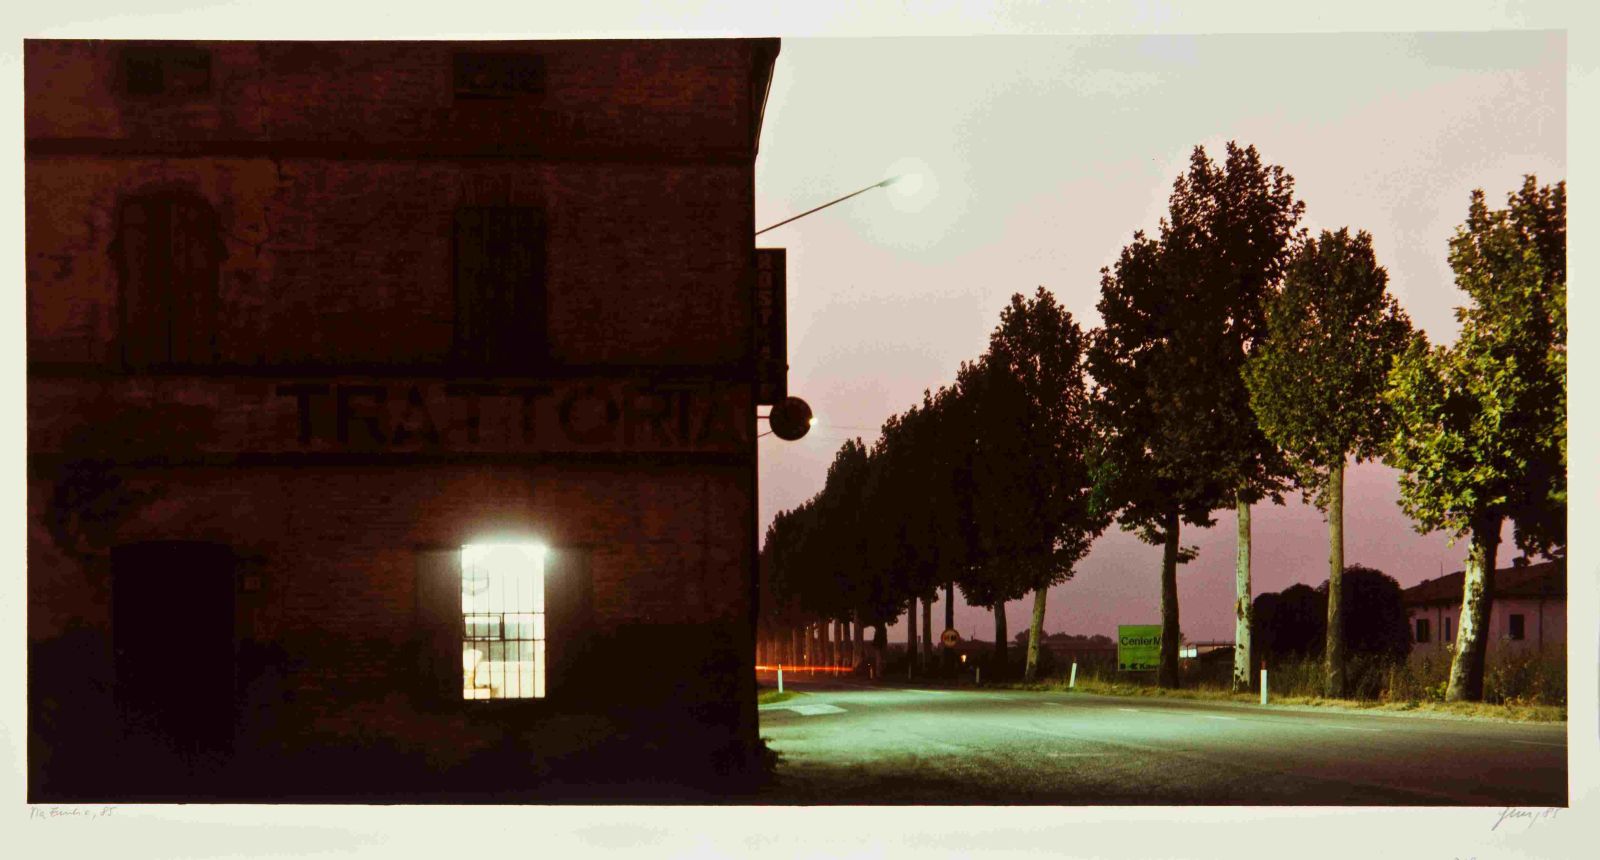 Luigi Ghirri, "Esplorazioni sulla via Emilia. Vedute nel paesaggio", Fidenza 1985 Photo Credits: Biblioteca Panizzi Reggio Emilia